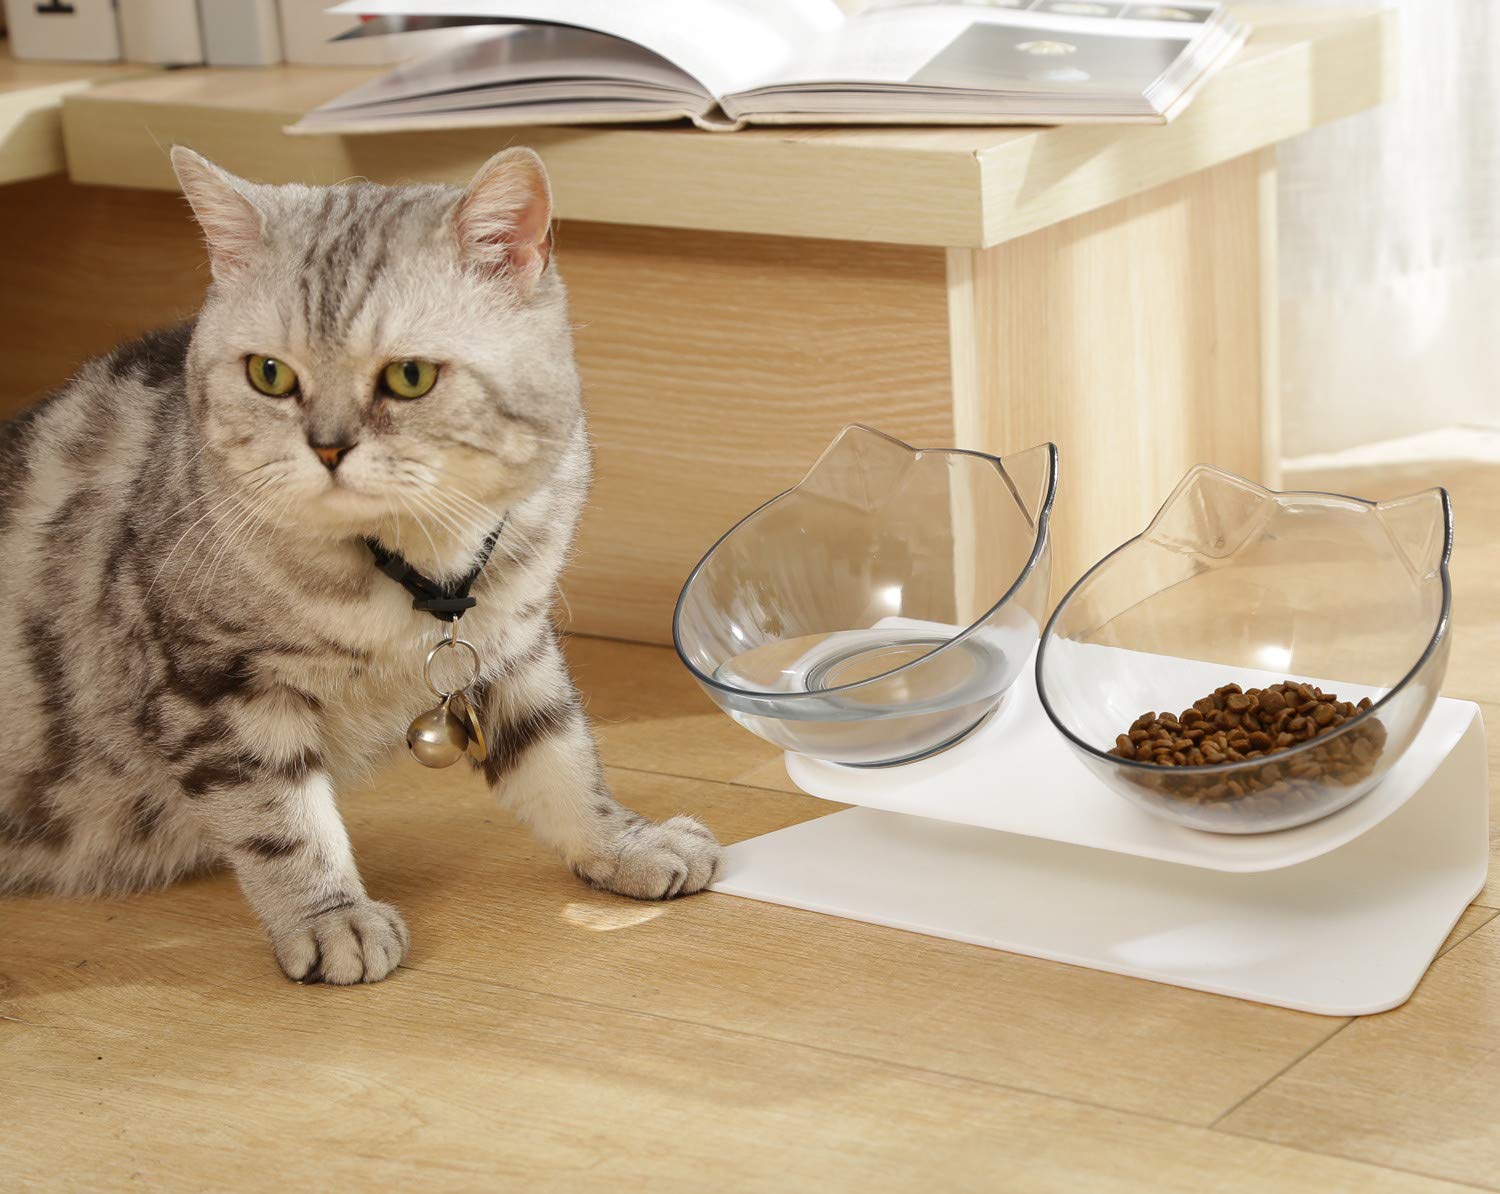 Ciotole Rialzate per cibo Gatti - Anti Vomito